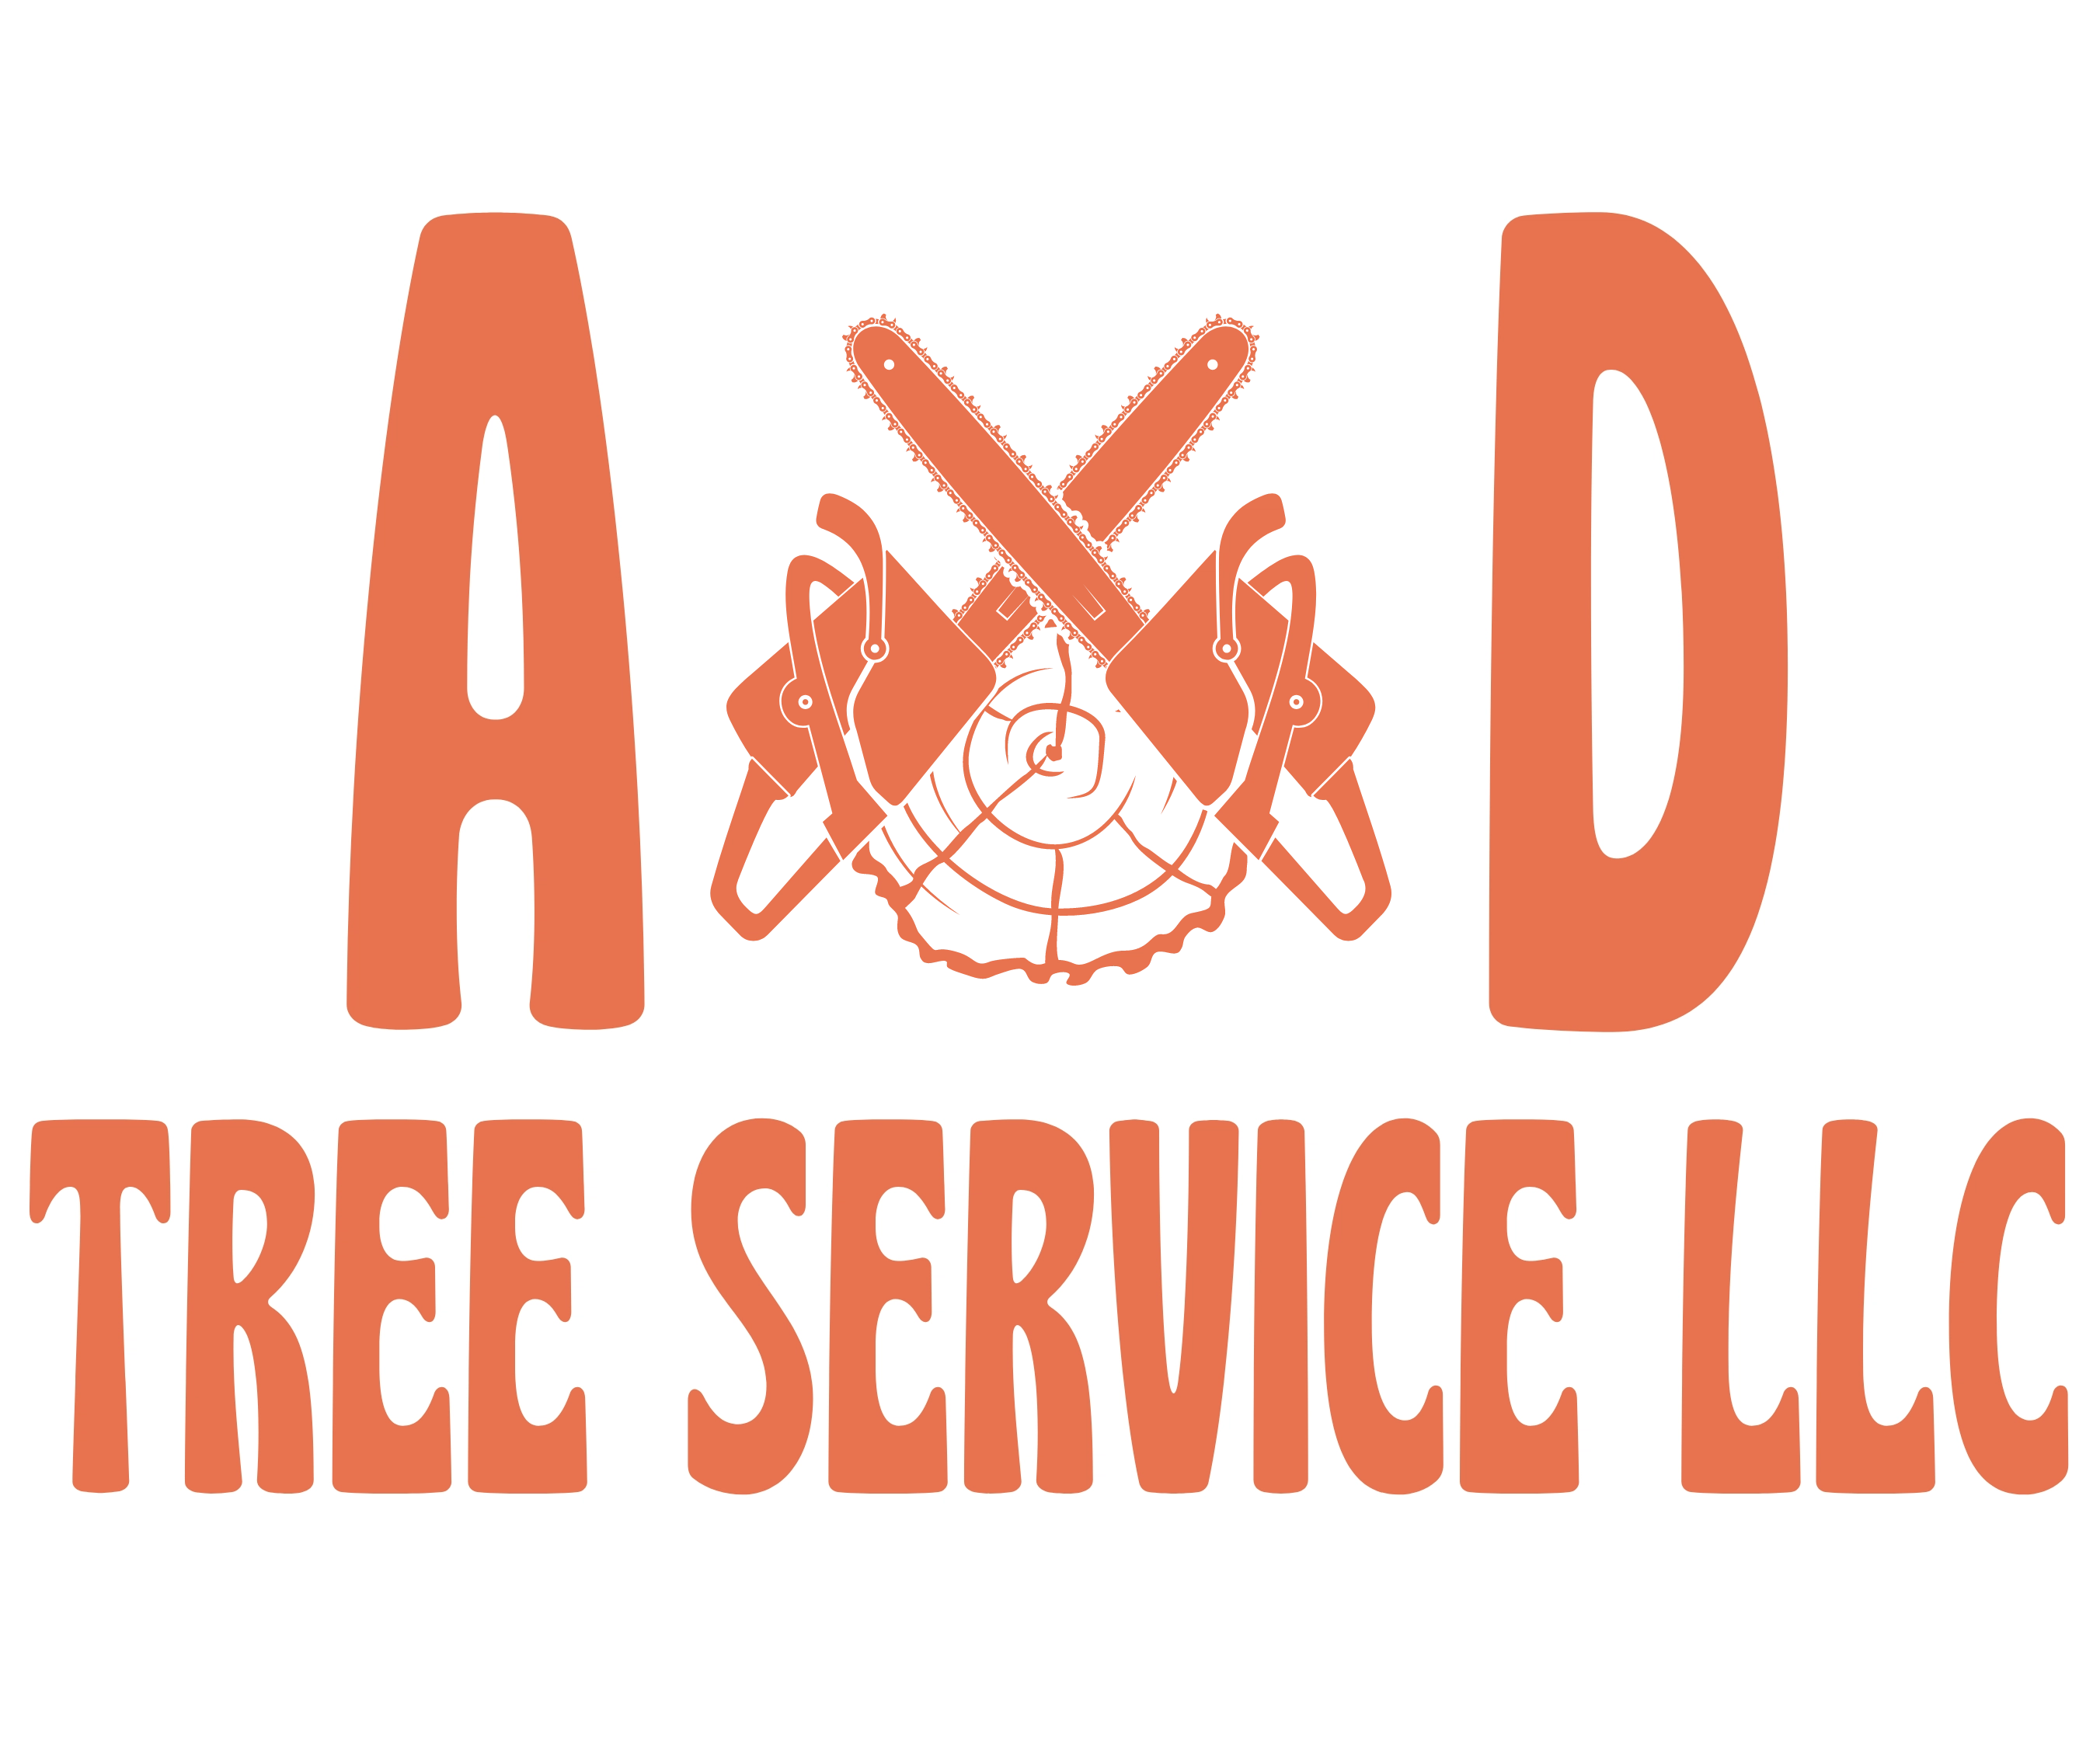 A&D Tree Service LLC Logo